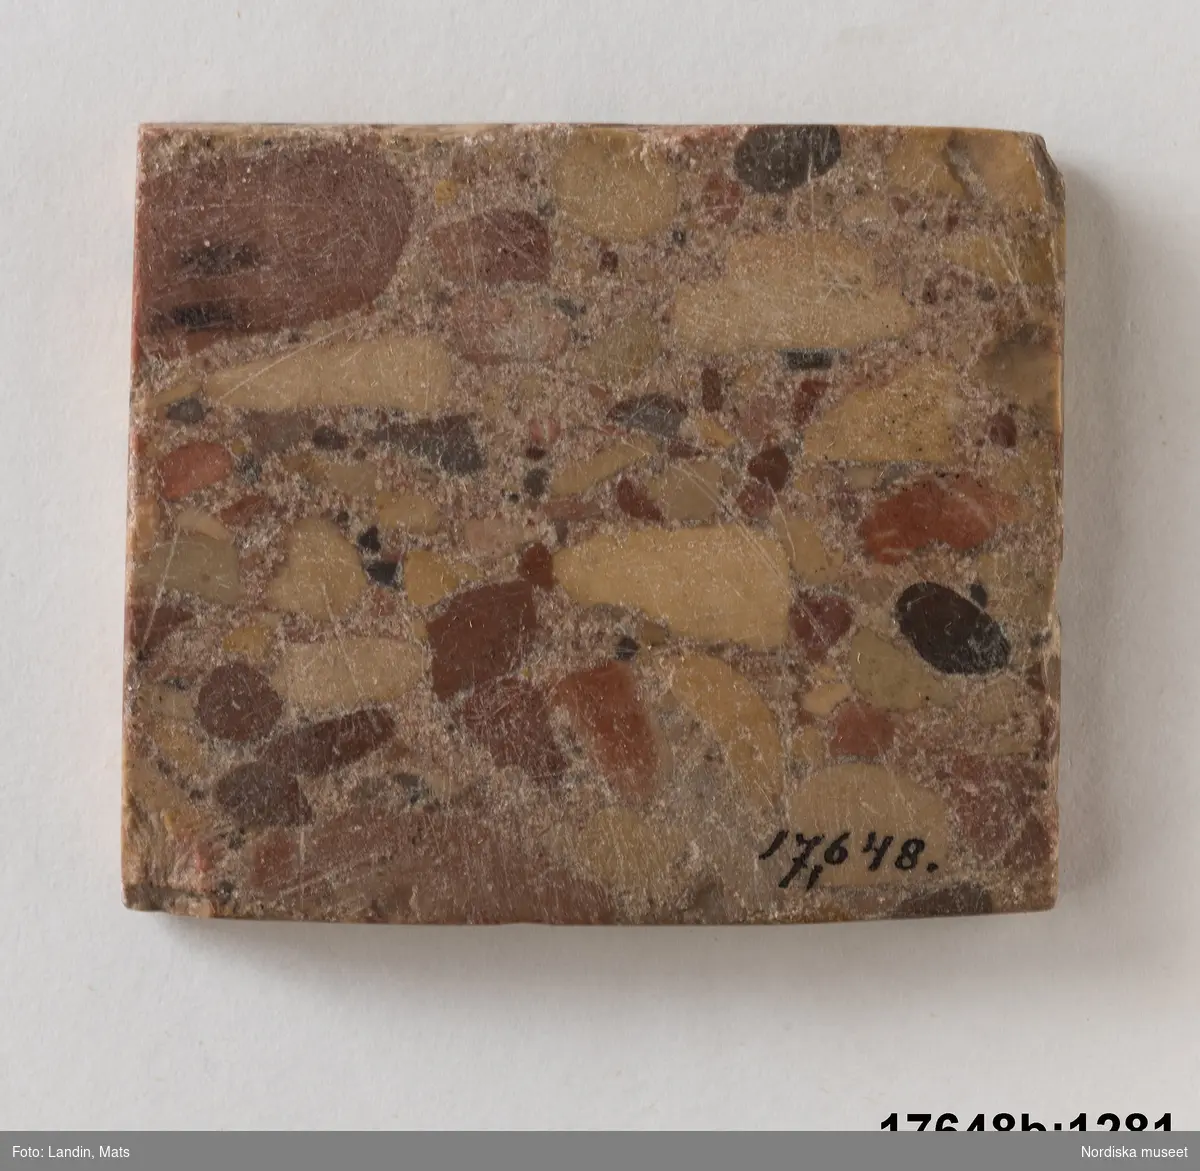 Rektangulär platt sten (marmor?), marmorerat mönster i olika matta nyanser. 
/Leif Wallin 2014-01-07